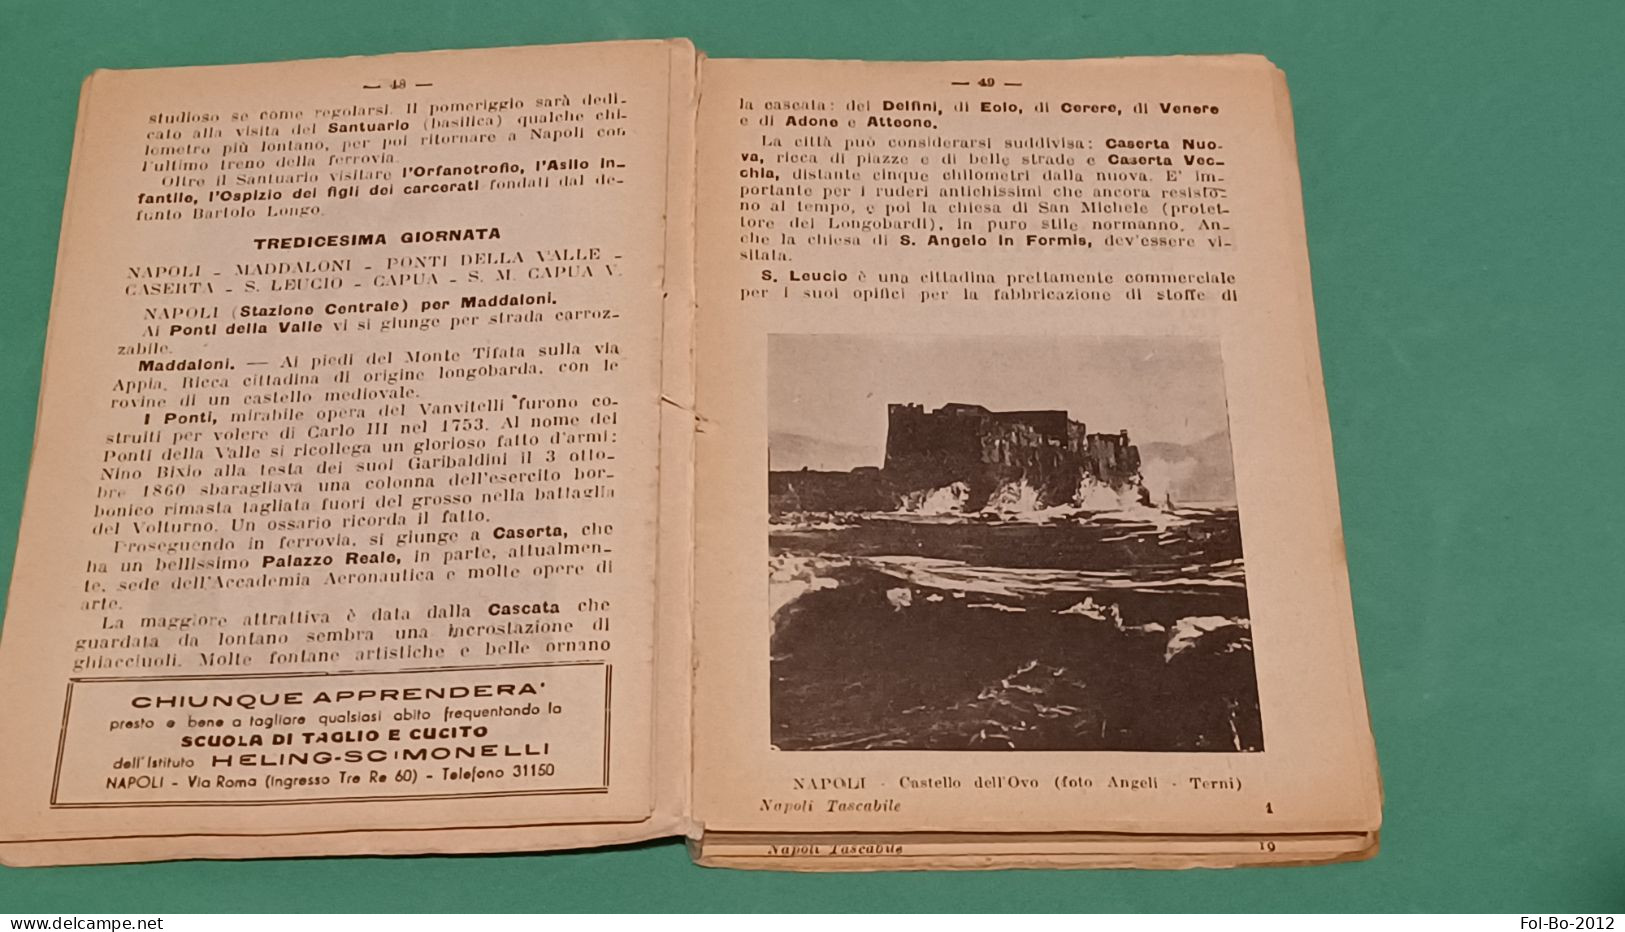 Napoli tascabile guida illustrata e dintorni anni 40.50